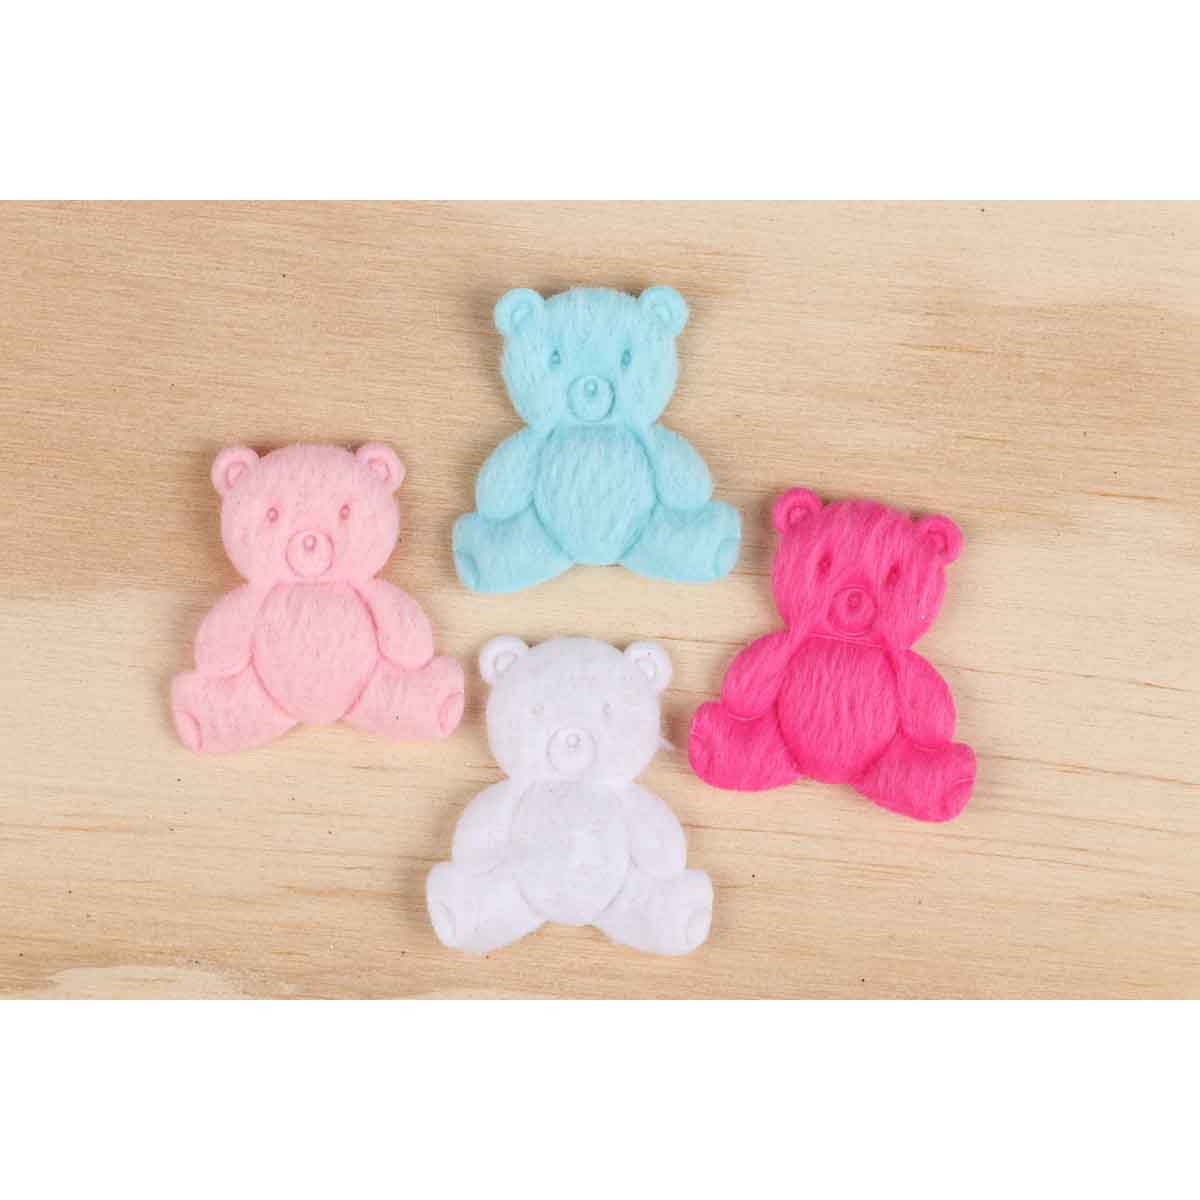 80 Padded Furry Felt Teddy Bears 1.25″- 4 Colors